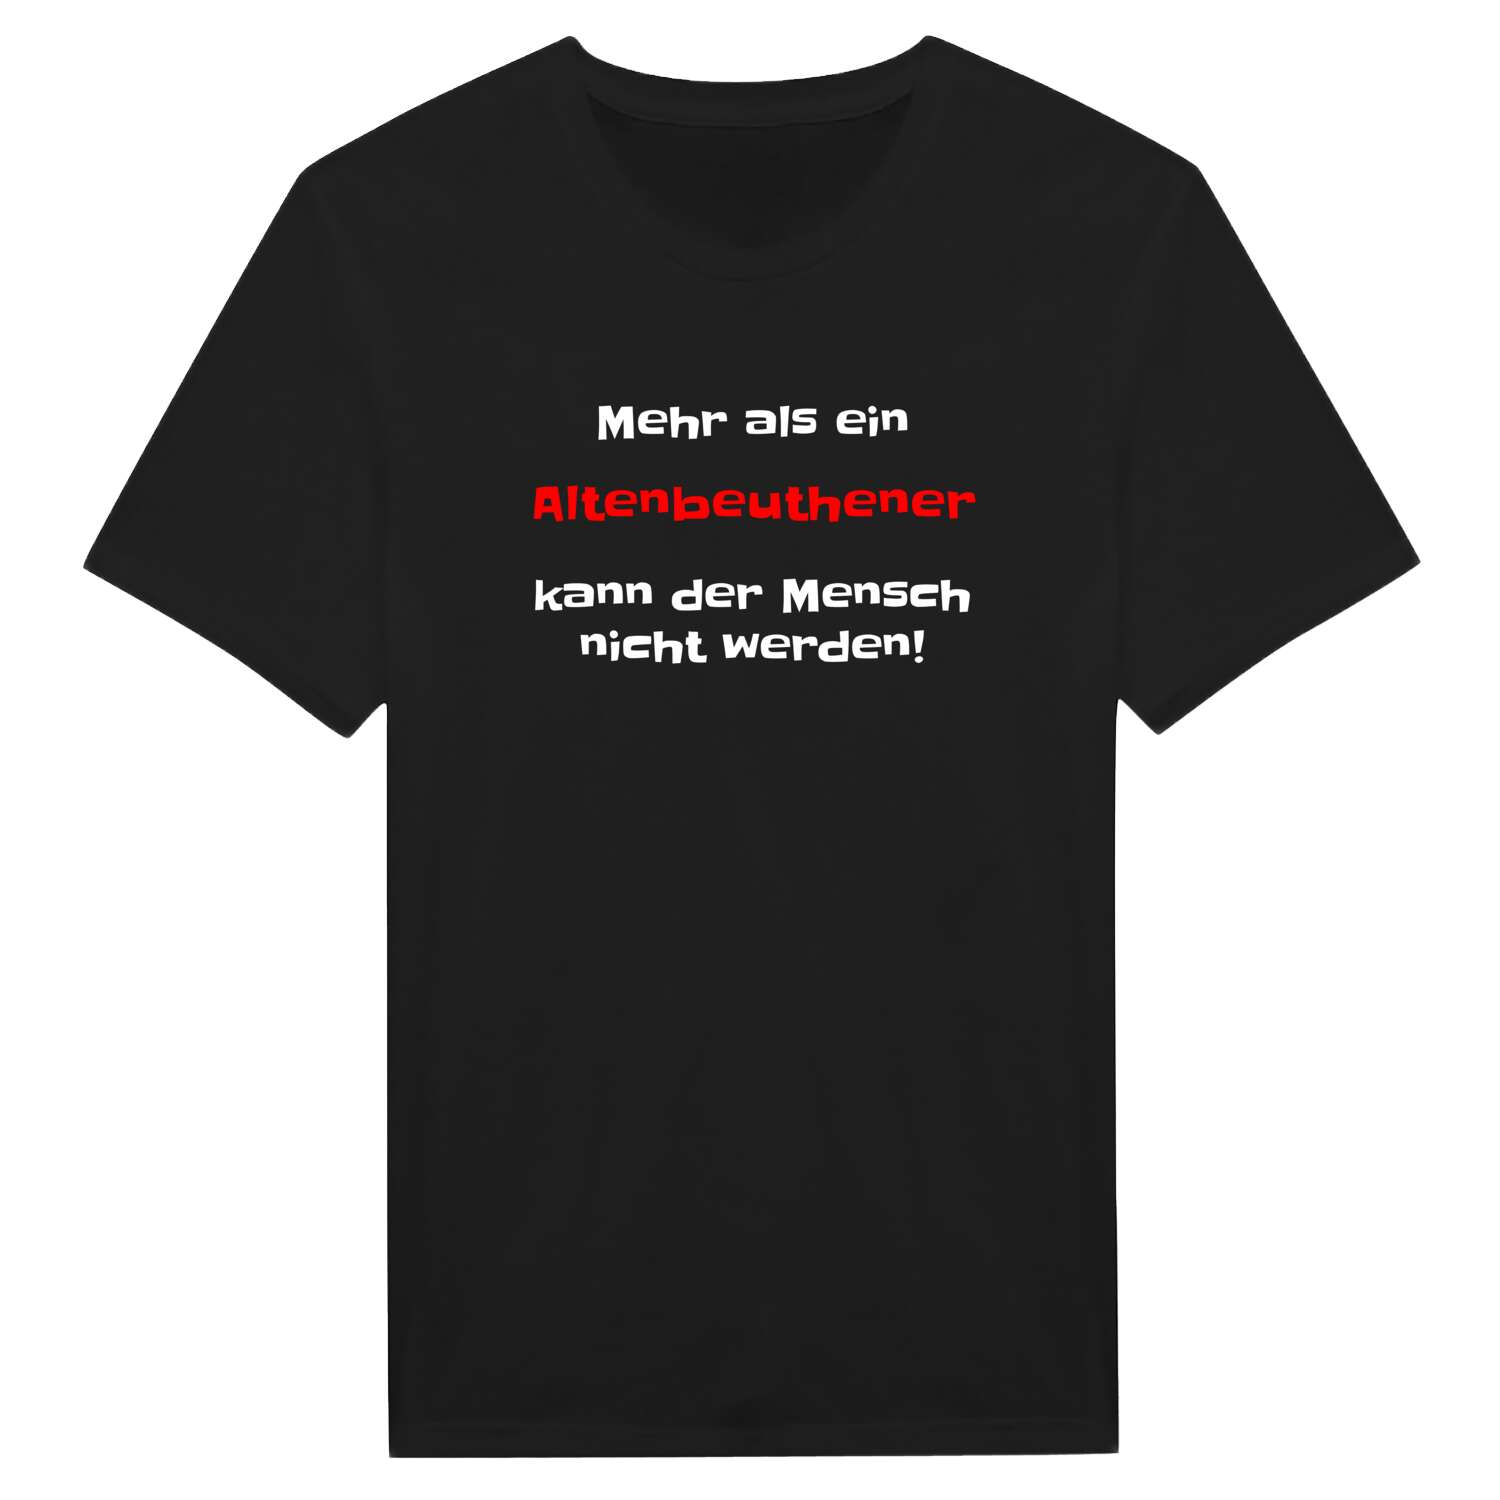 Altenbeuthen T-Shirt »Mehr als ein«